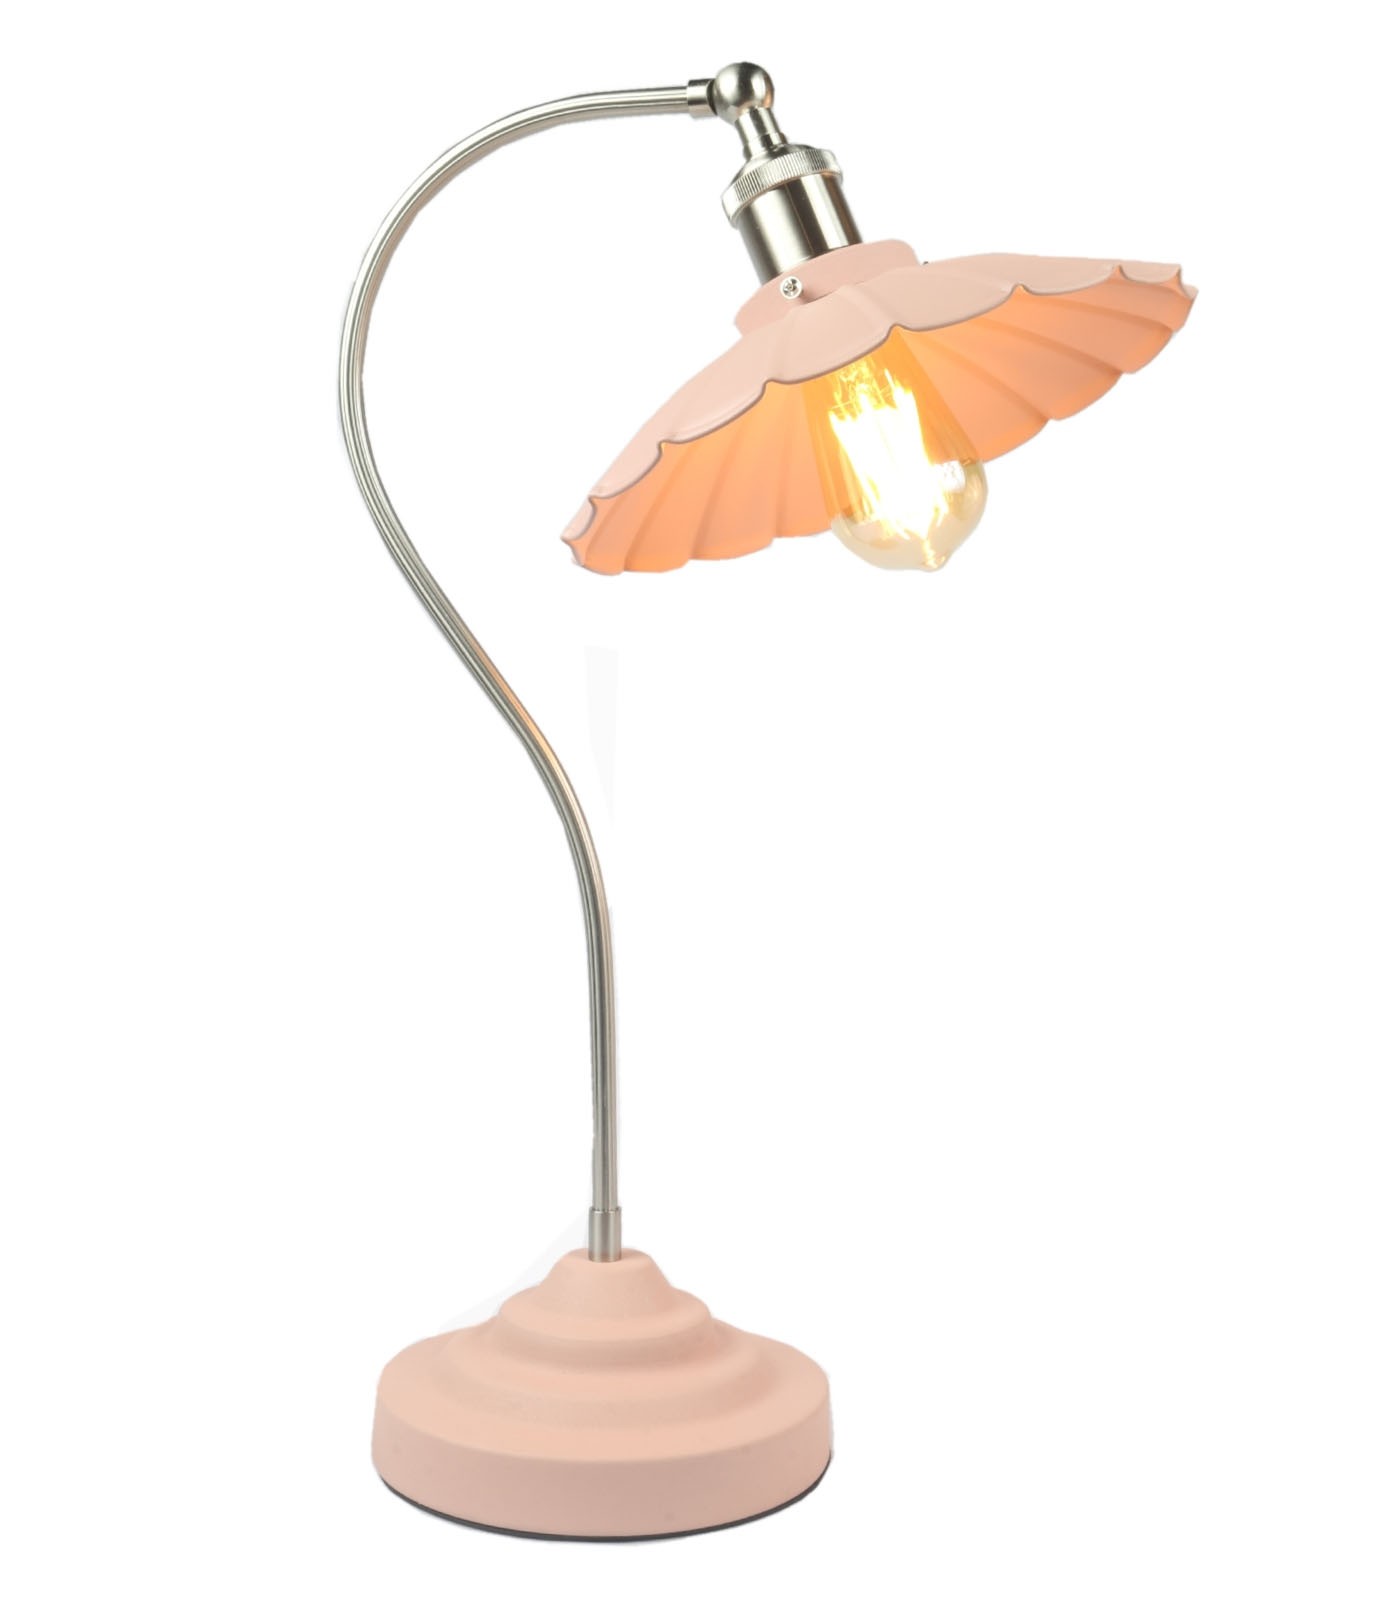 Daisy Lamp Textured Pink Shade/Base - Satin Chrome Arm 52cm (Bulbs Not Included)